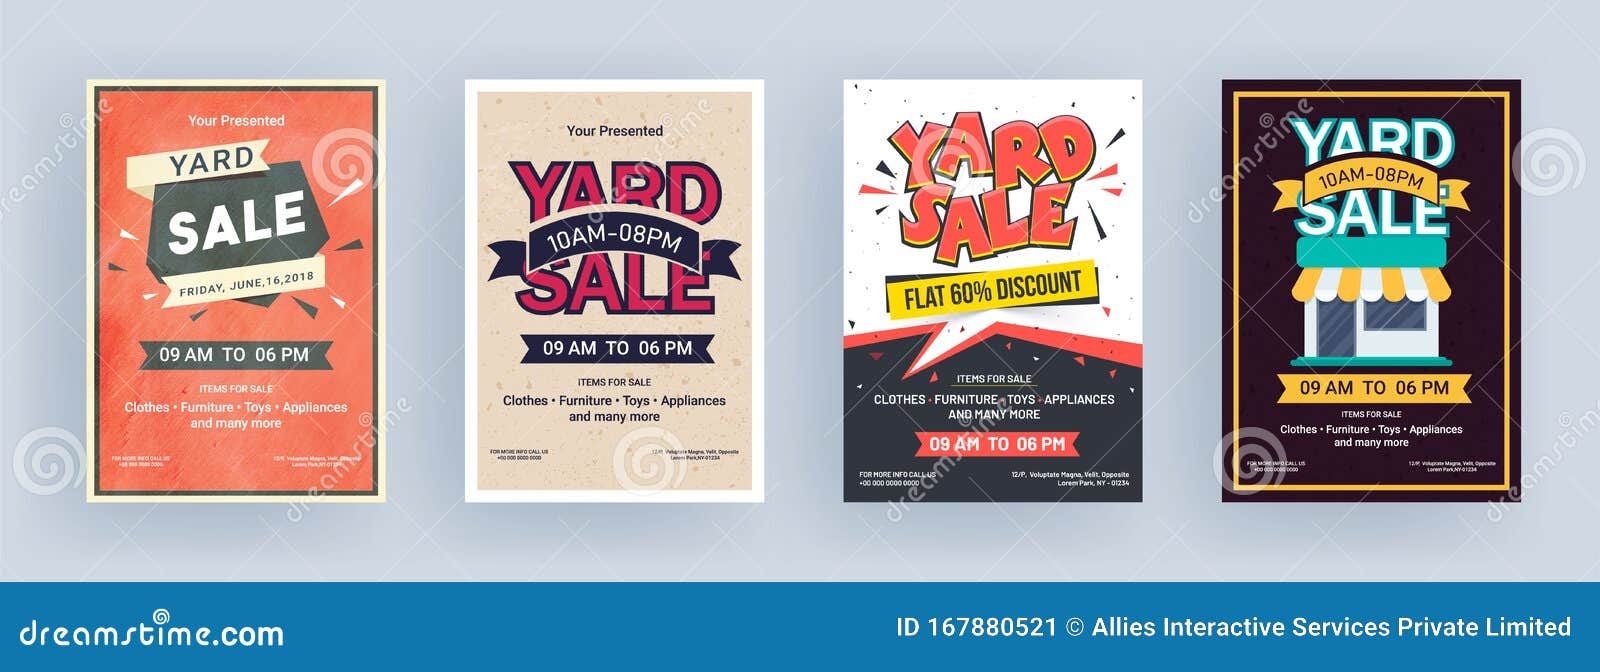 Vintage Yard Sale Flyer or Template Design. Stock Illustration With Yard Sale Flyer Template Word